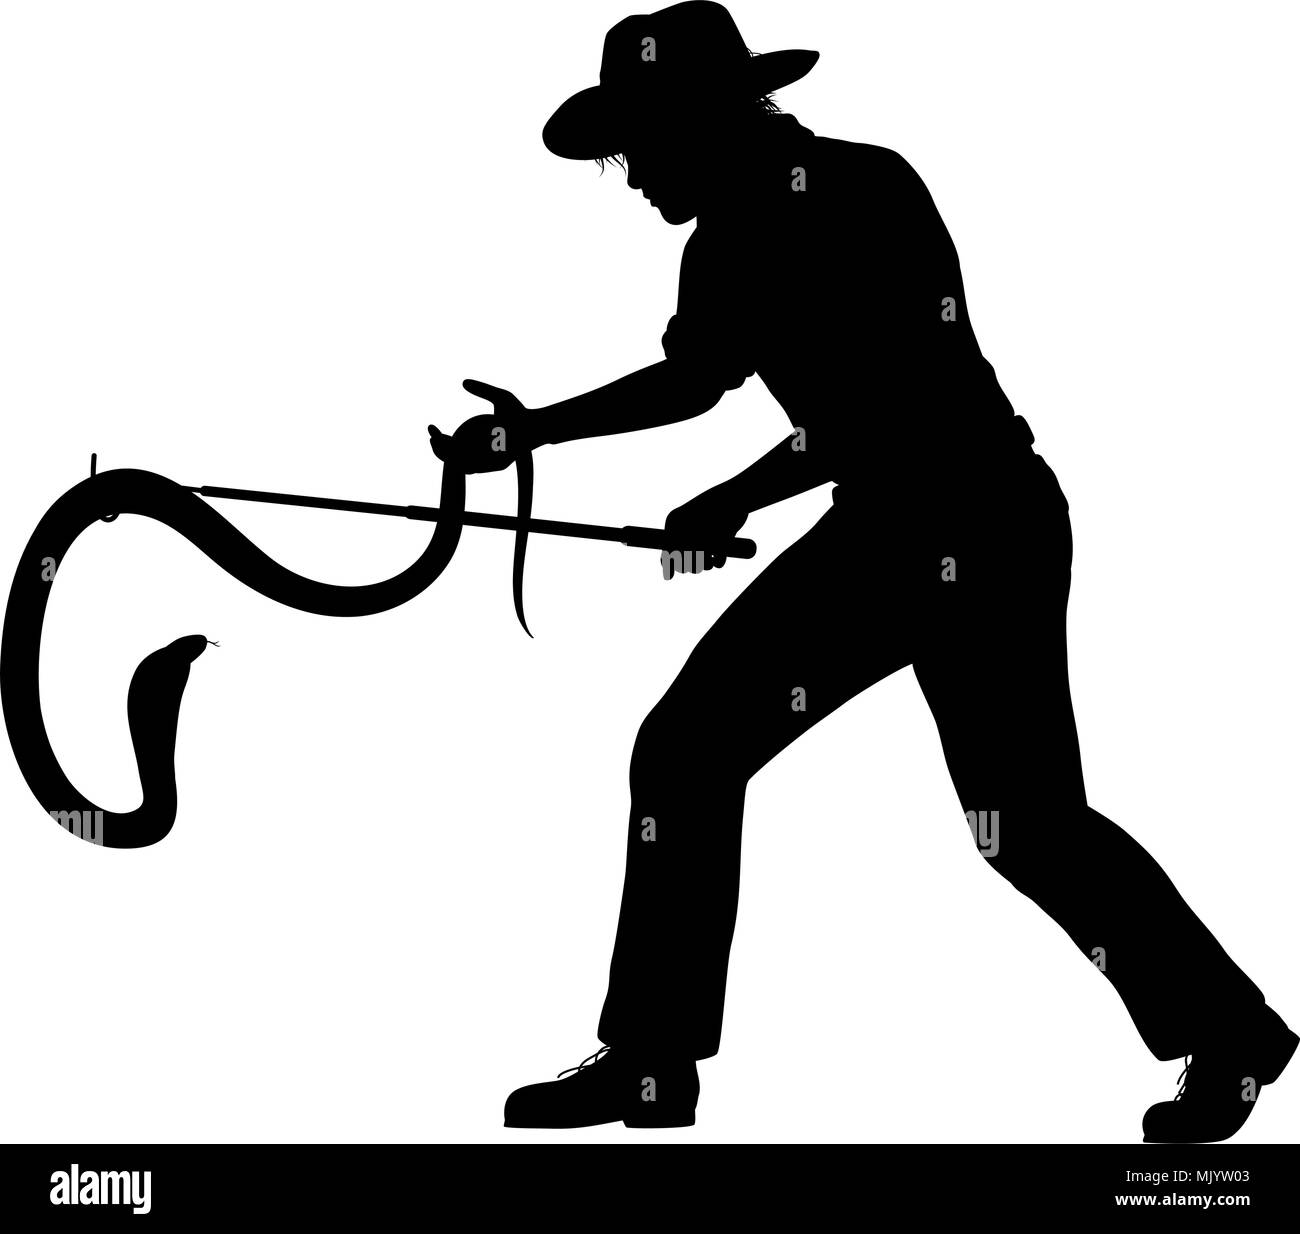 Silueta vectorial editable de un hombre pescando una cobra, con la serpiente, el hombre y snakestick como objetos separados Ilustración del Vector